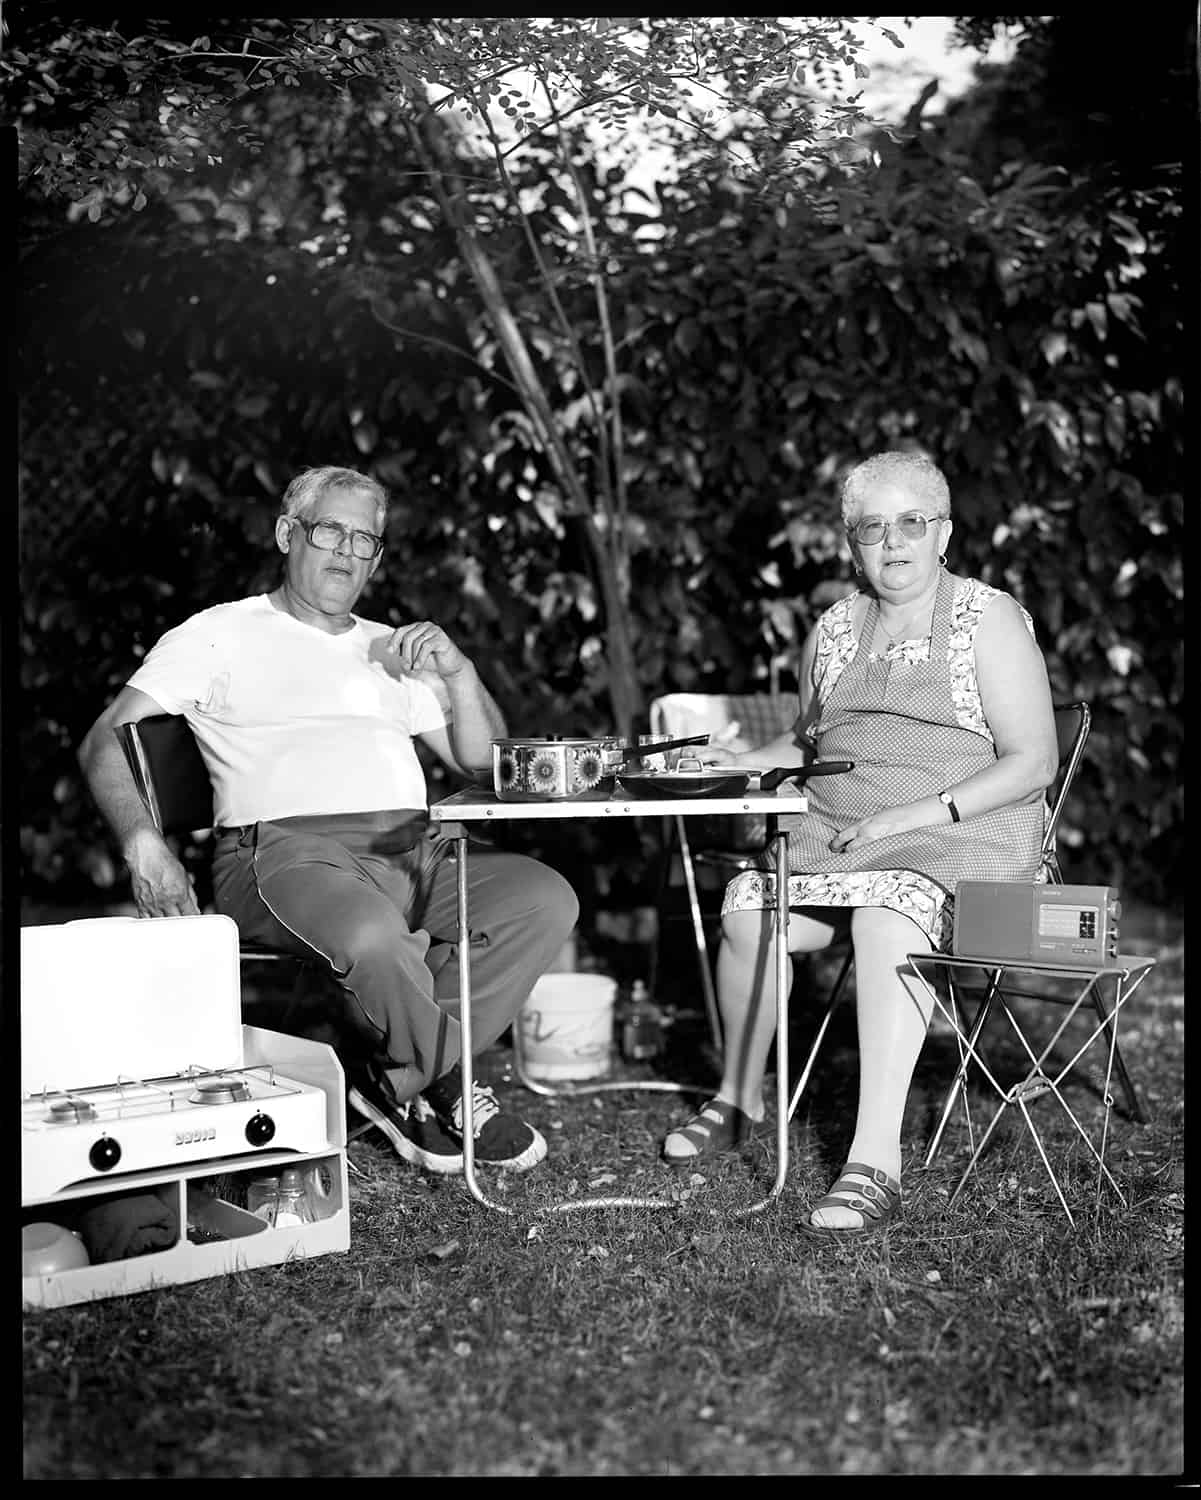 photo noir et blanc d'un de pique-niqueurs sur un emplacement de camping © francois nussbaumer